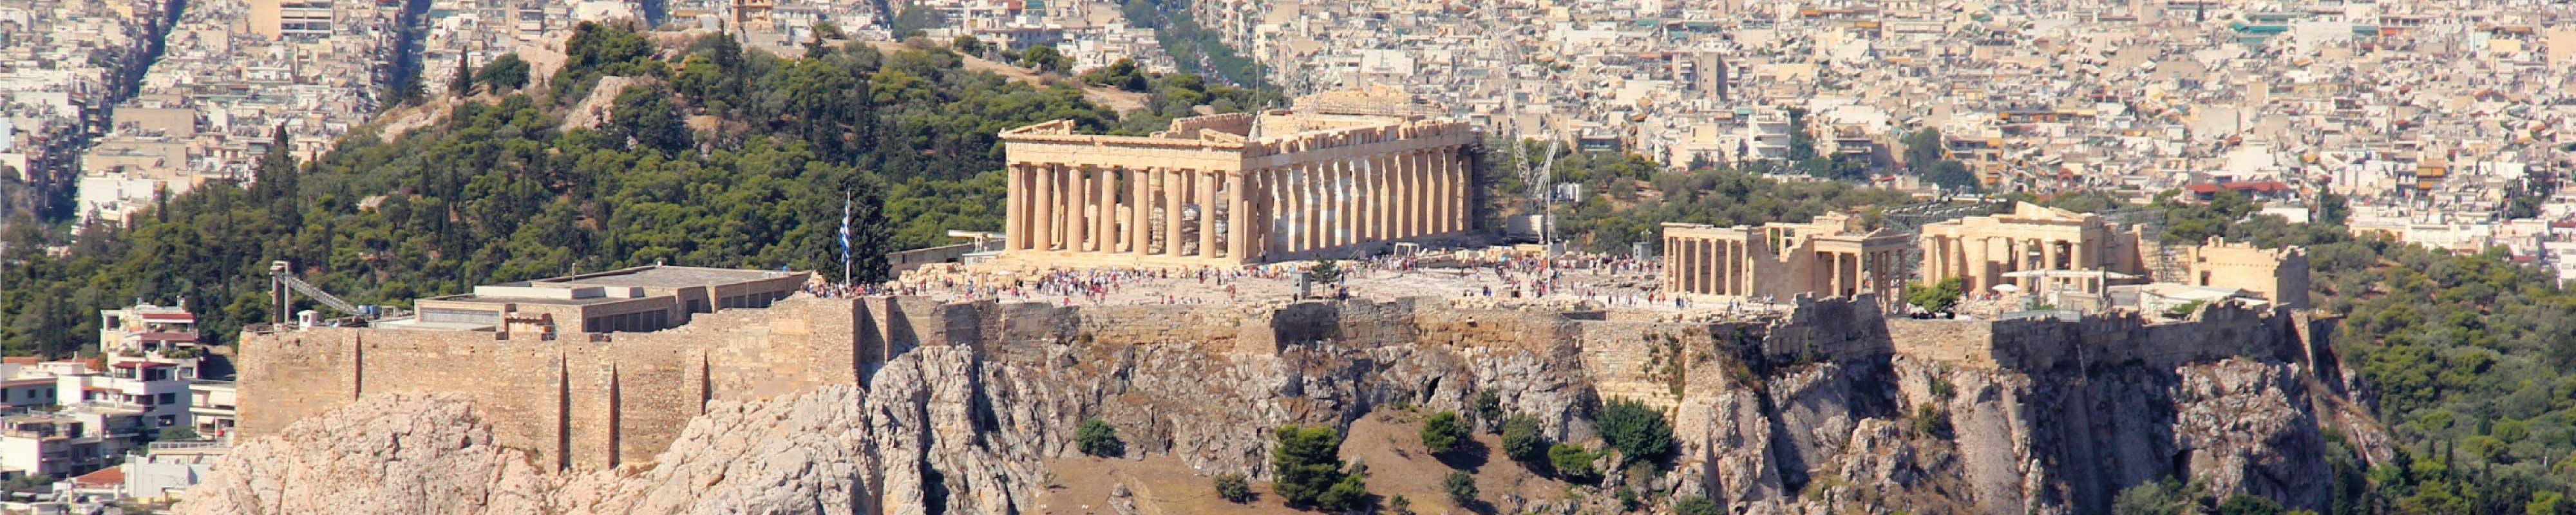 Luggage Storage | Acropolis in Athens - Nannybag